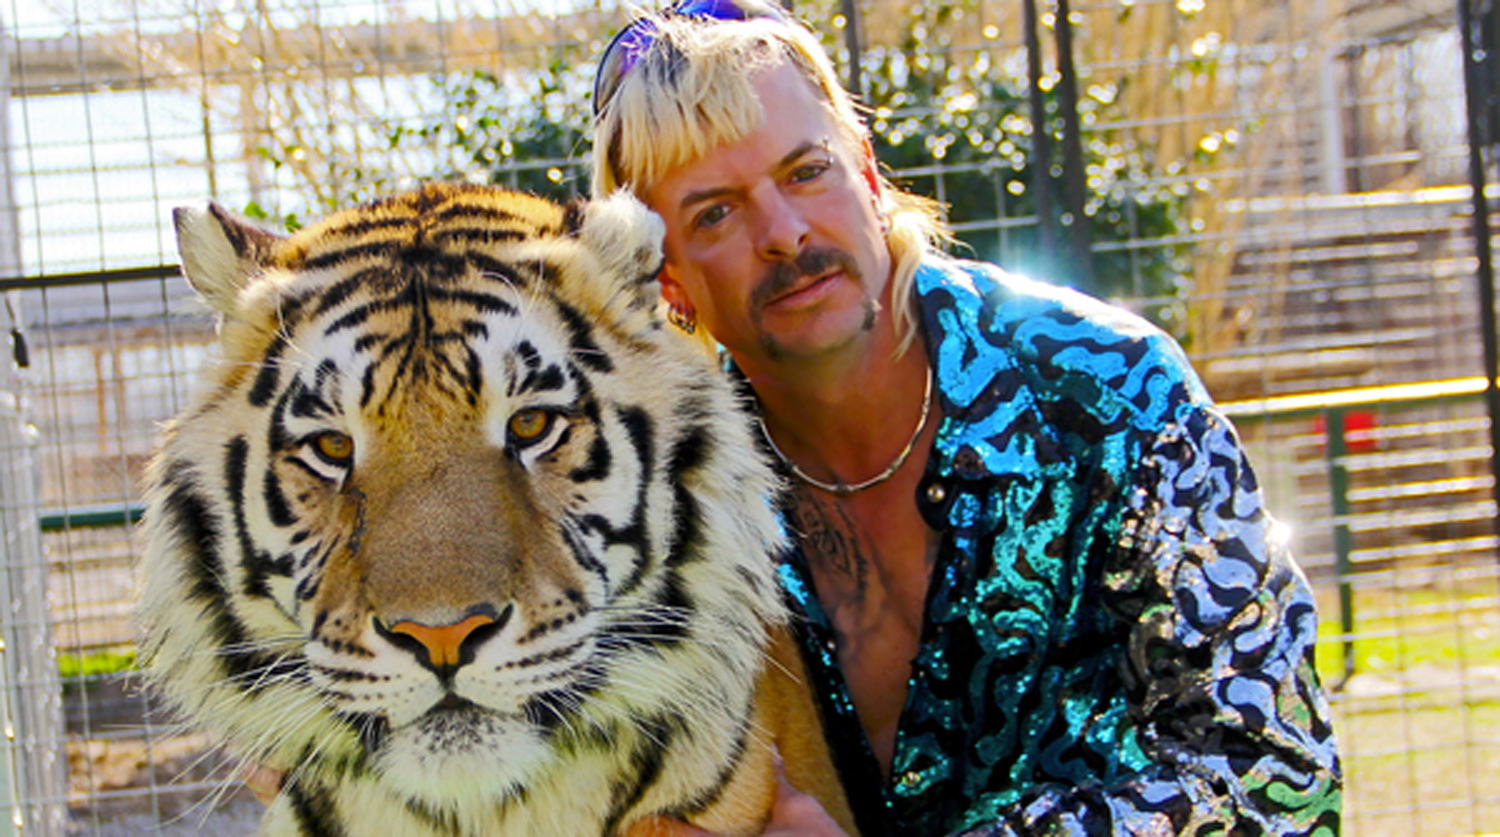 "Король тигров" (Tiger King) Джозеф Мальдонадо-Пассаж по прозвищу "Джо Экзотик"